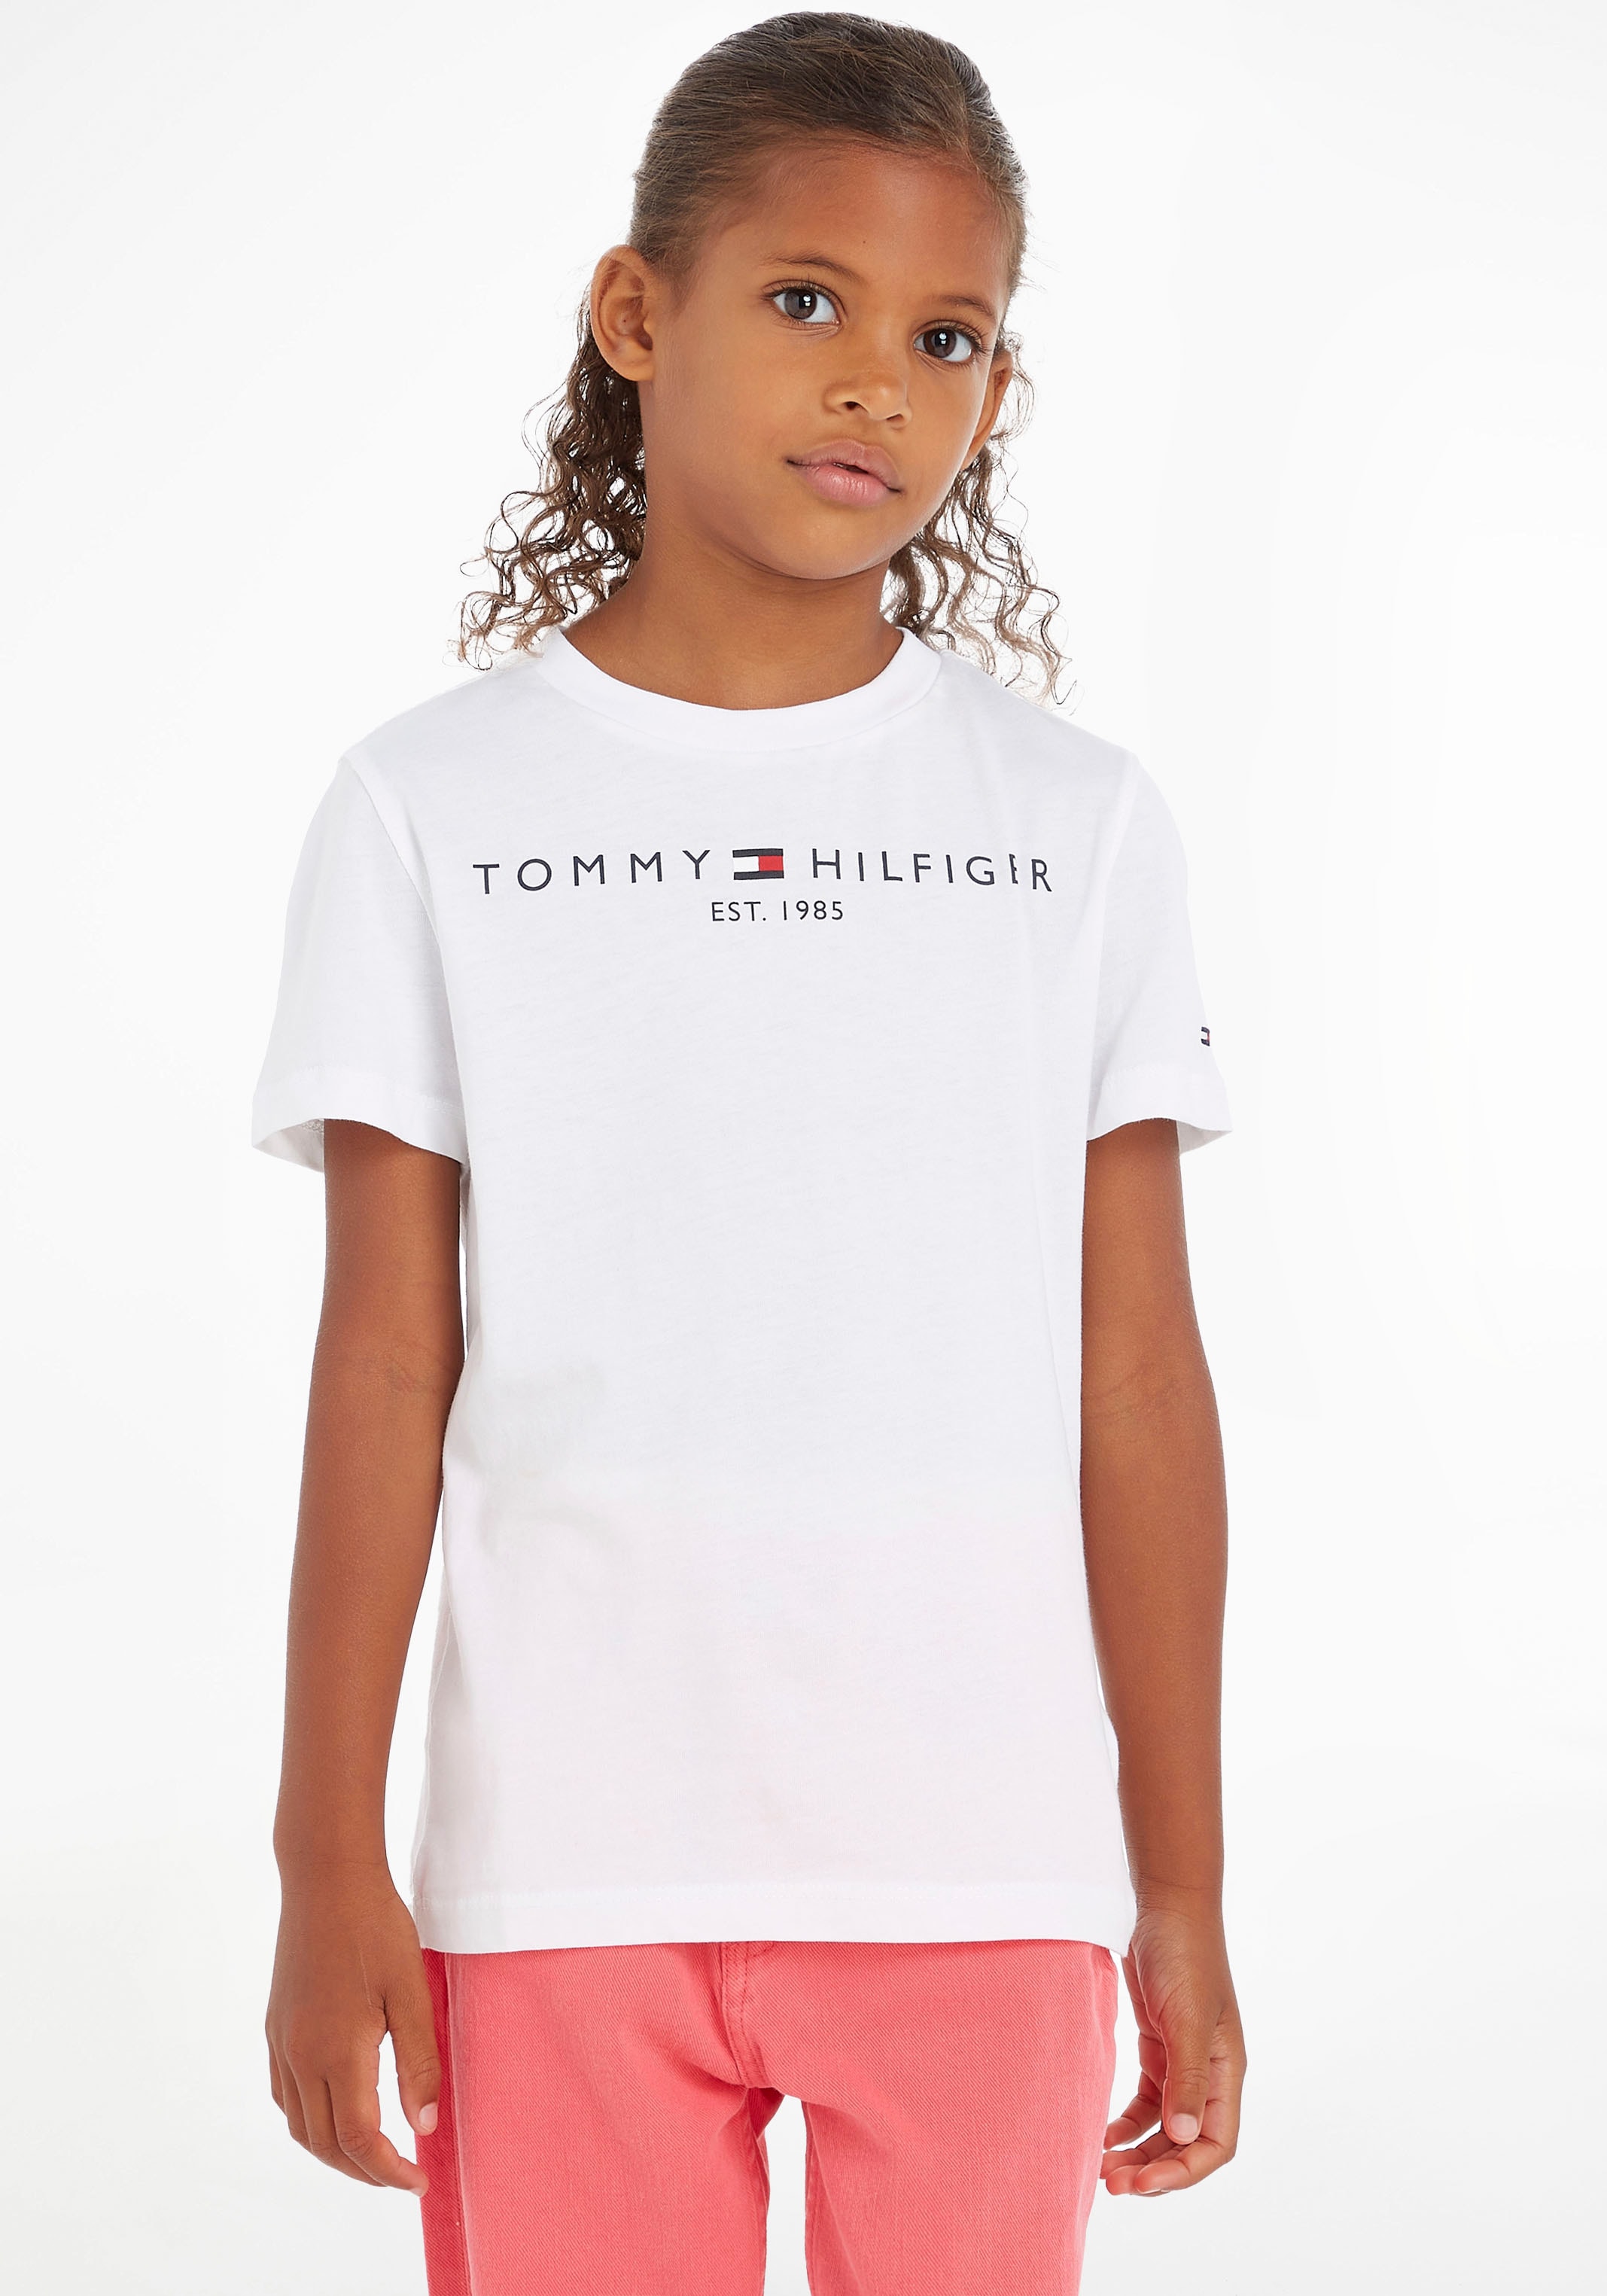 Junior Hilfiger T-Shirt TEE«, bei »ESSENTIAL MiniMe,für Jungen Kids und Kinder Mädchen Tommy